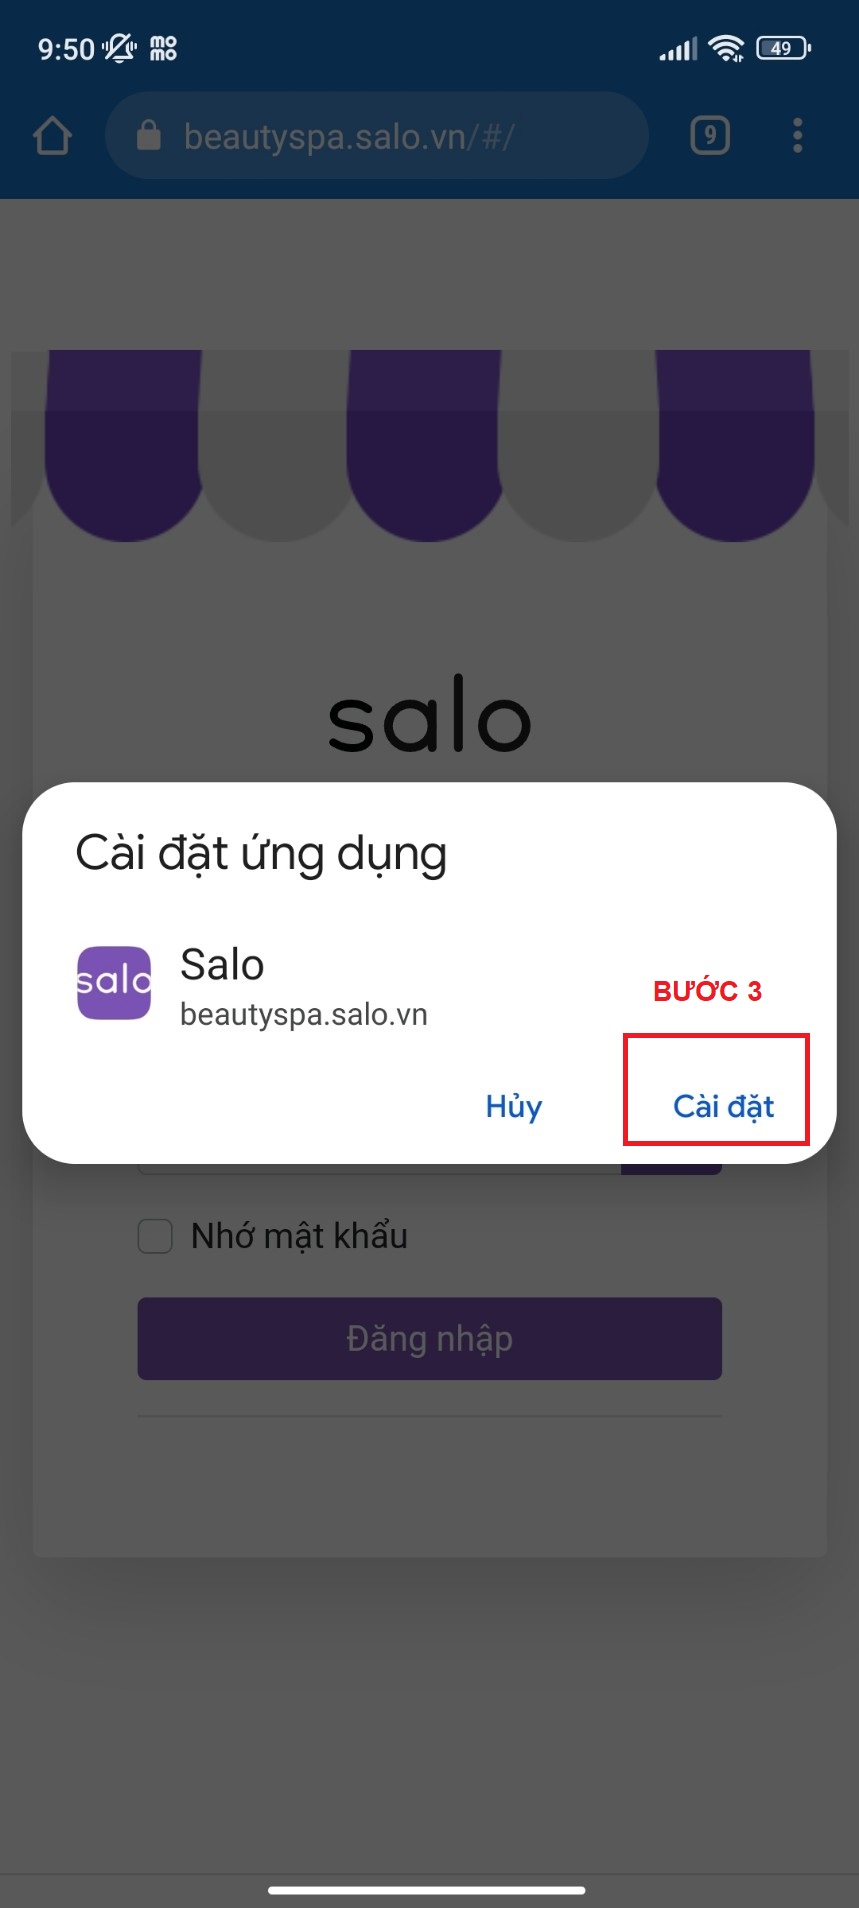 Bước 3: Nhấn nút Cài đặt để tải app Salo